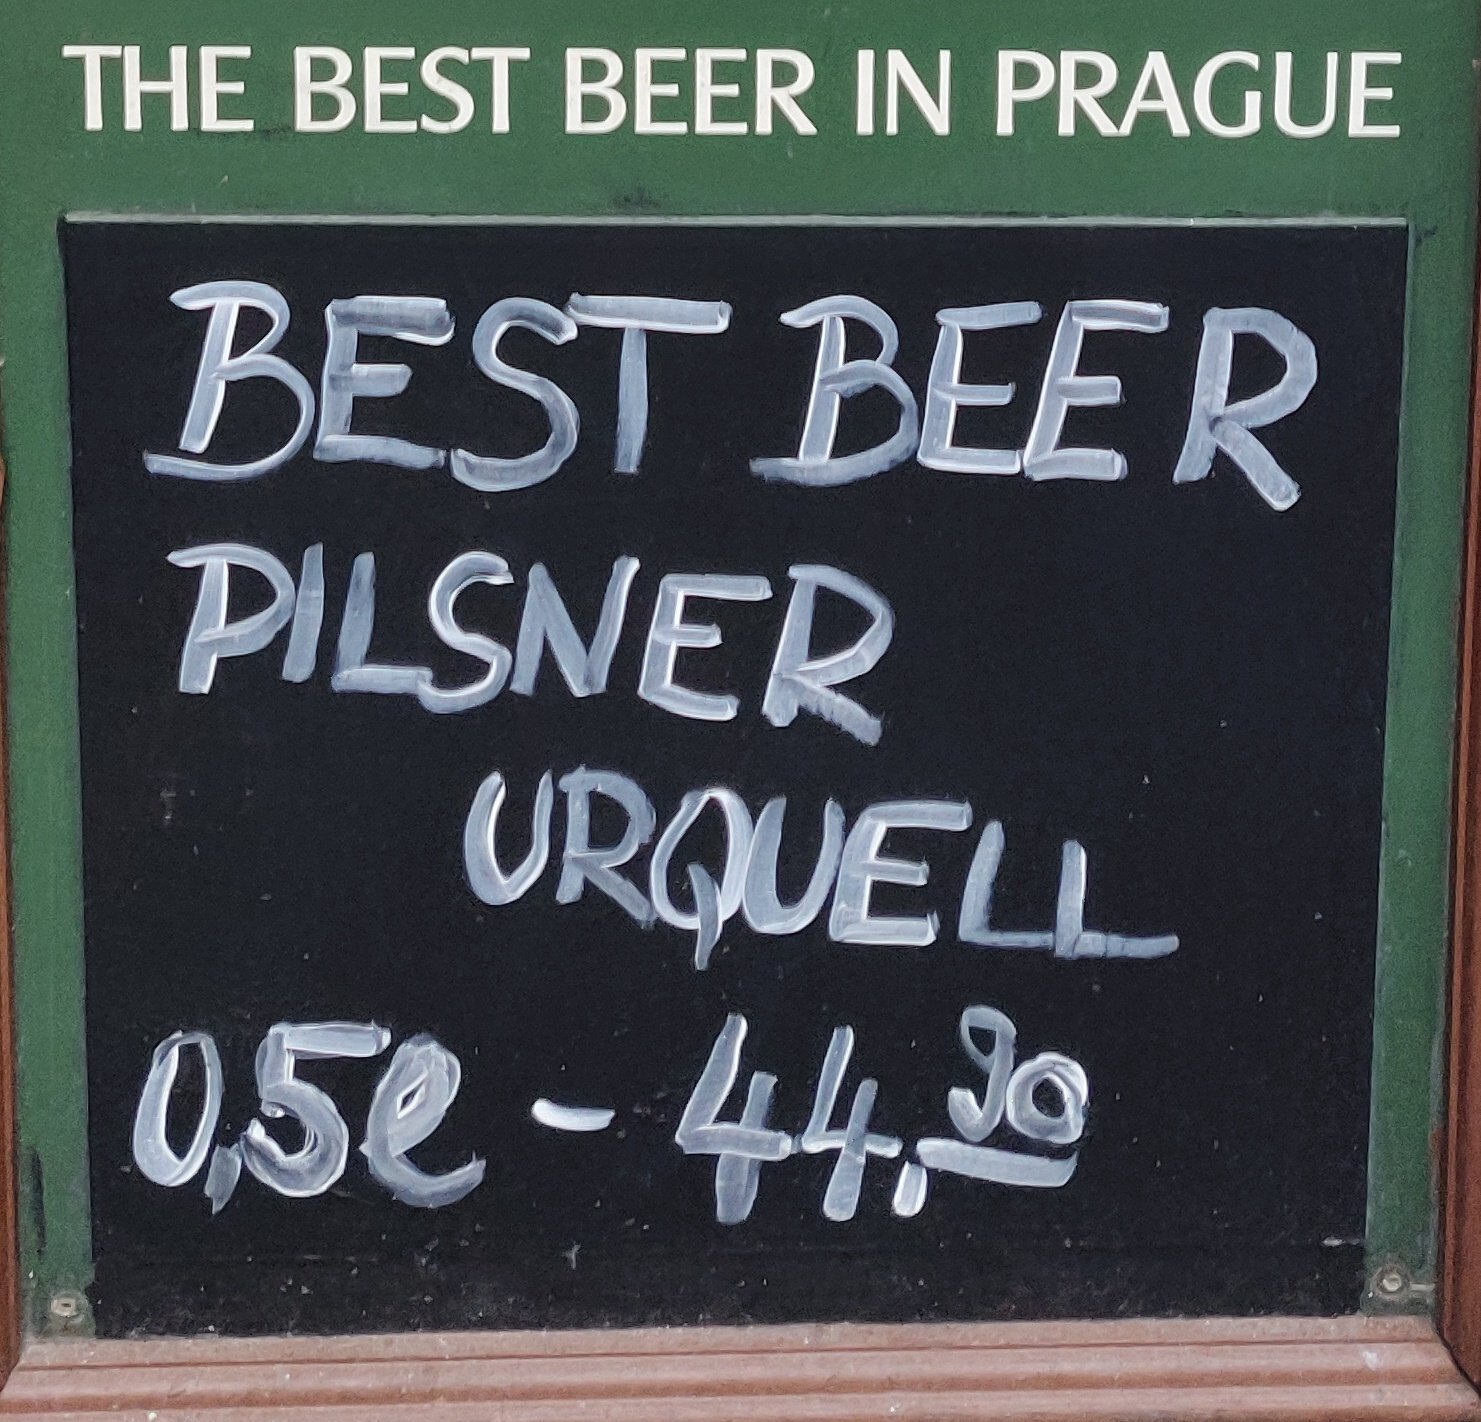 Pancarte de bar titrée "The Best Beer in Prague". Sur la partie en ardoise est écrit "Best beer Pilsner Urquell 0,5l - 44.30"